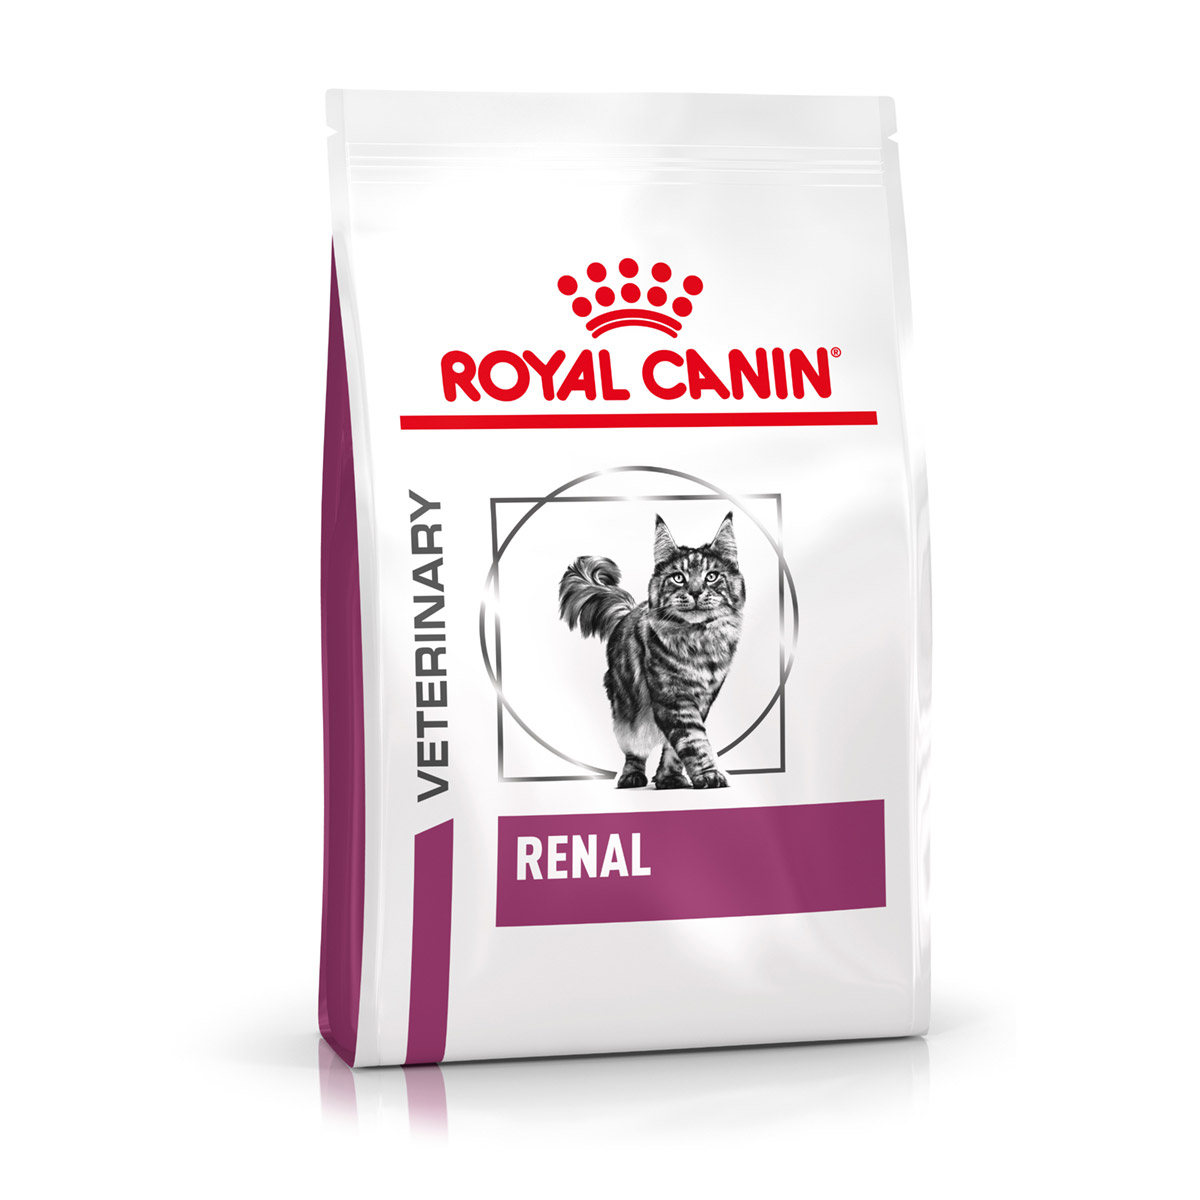 ROYAL CANIN® Veterinary RENAL Trockenfutter für Katzen 4kg